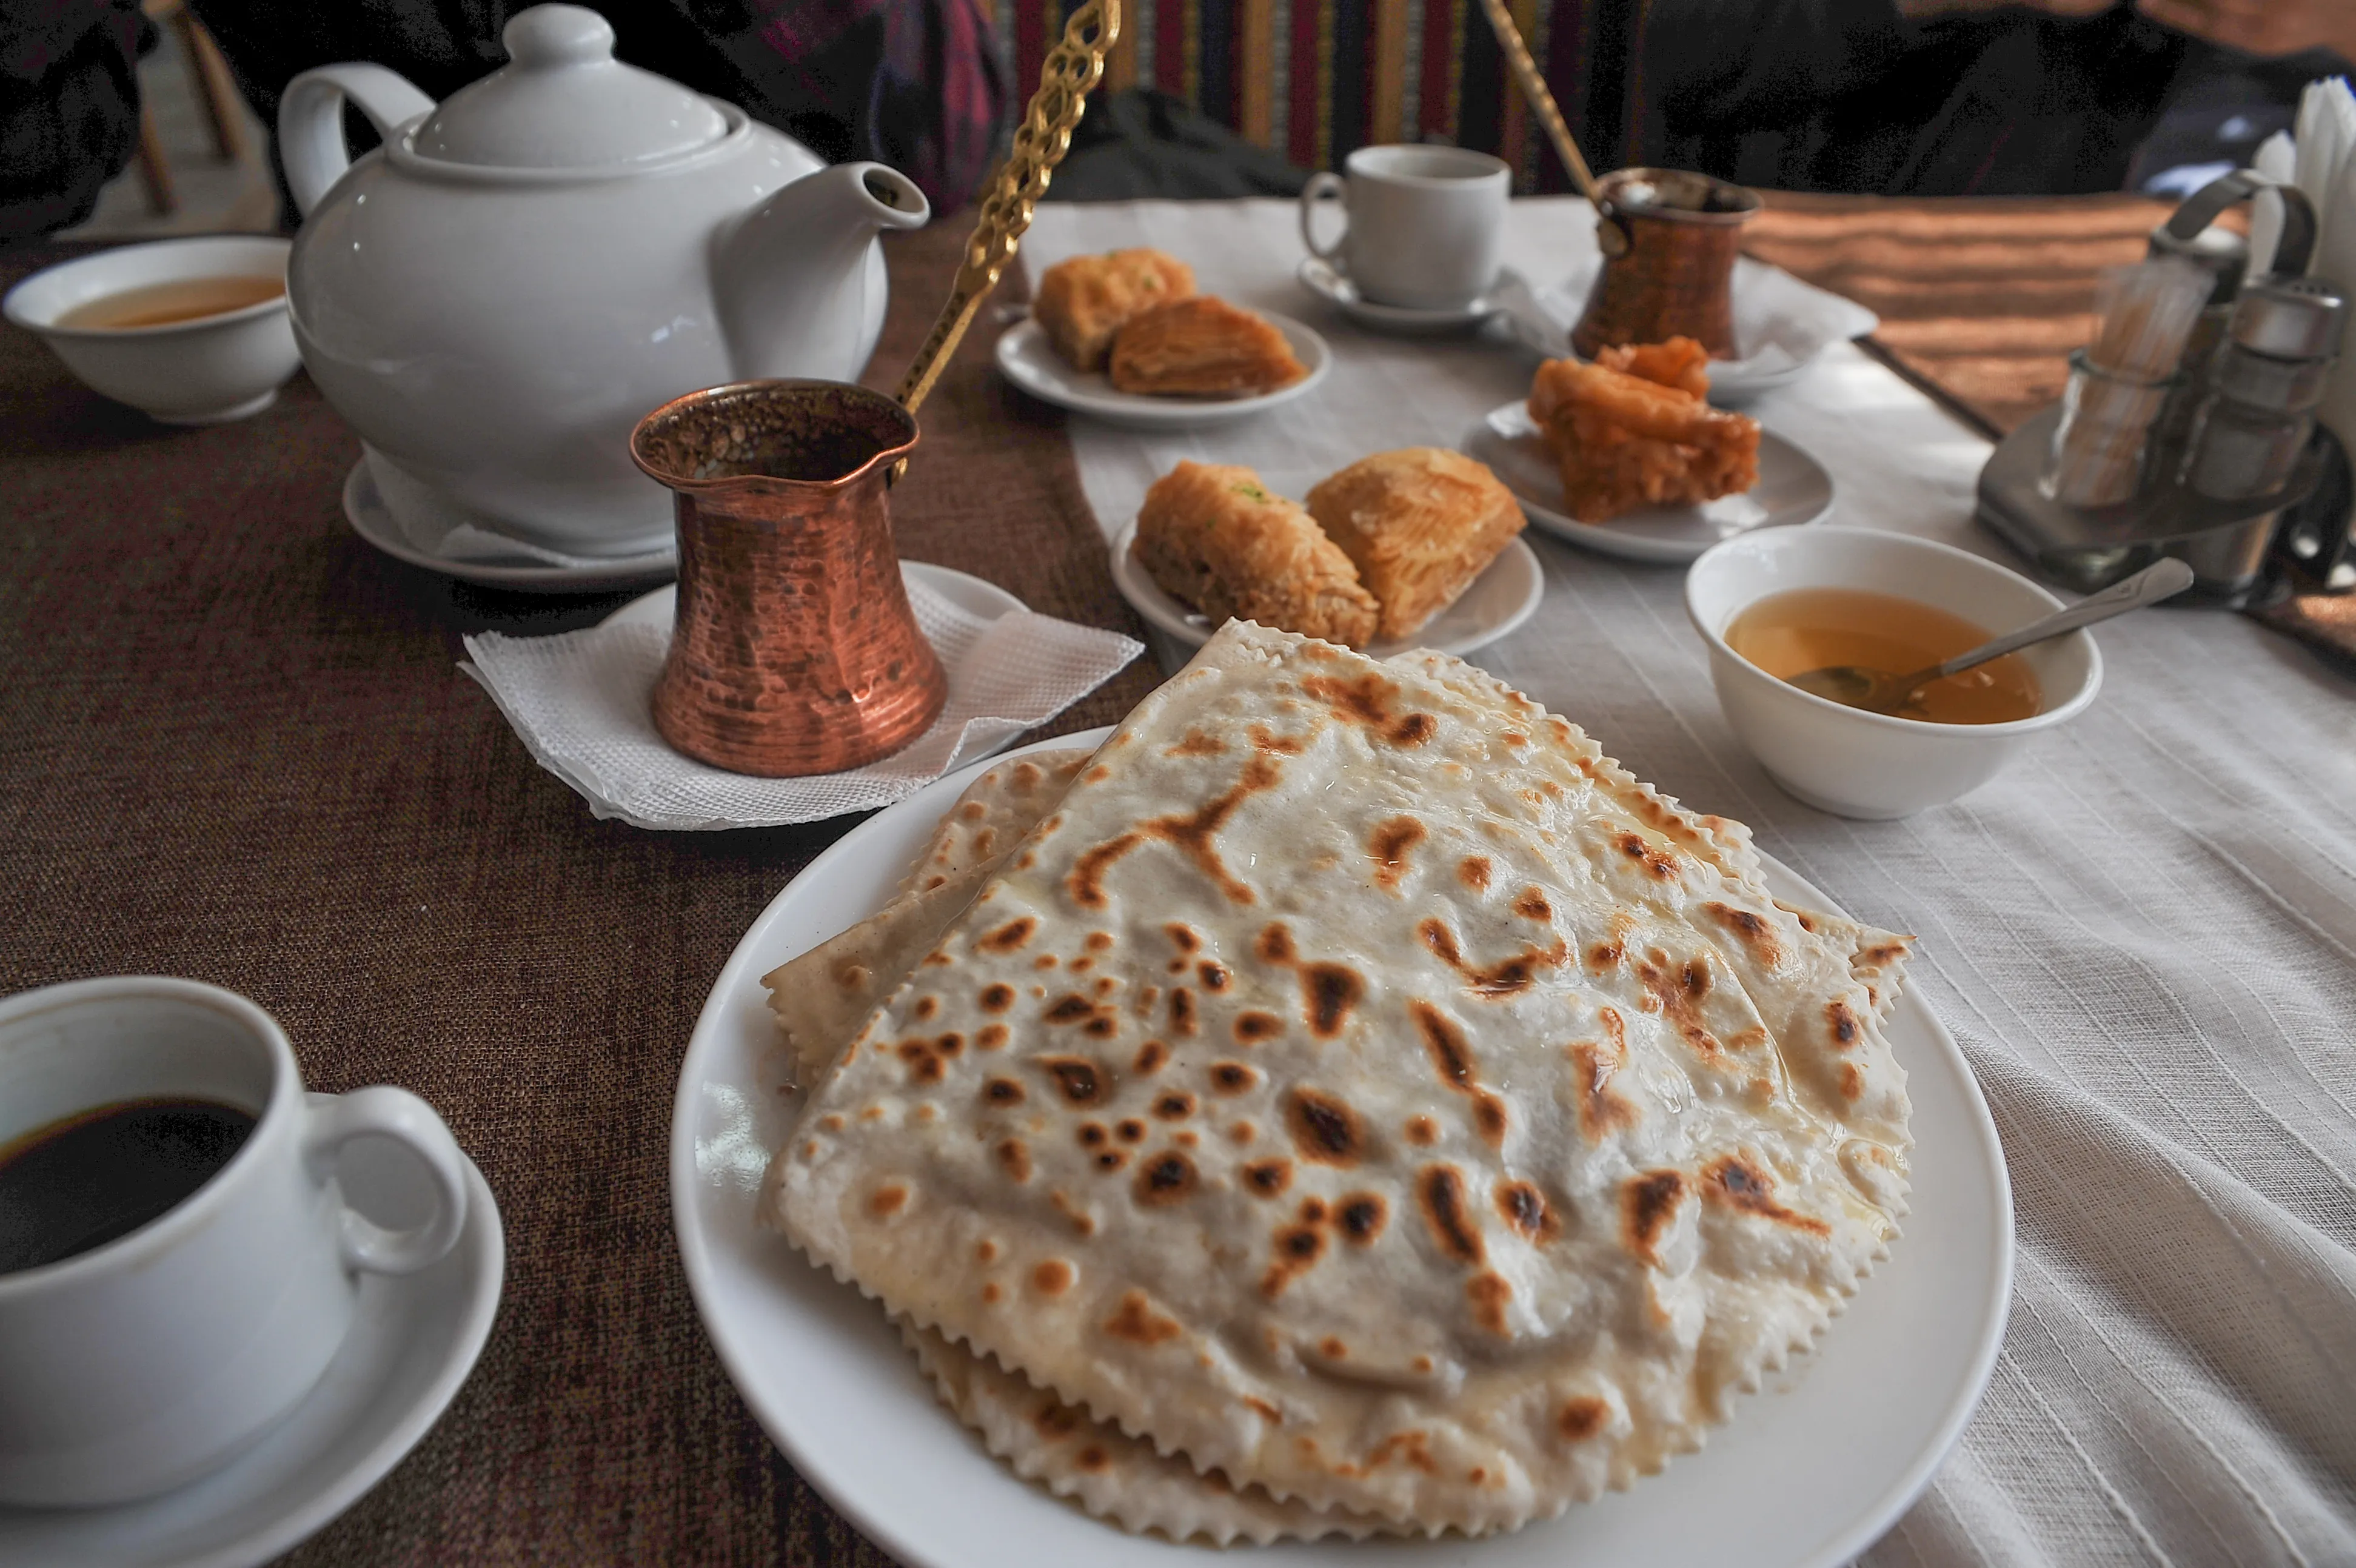 Ритуали споживання кави у кримських татар мають особливі назви